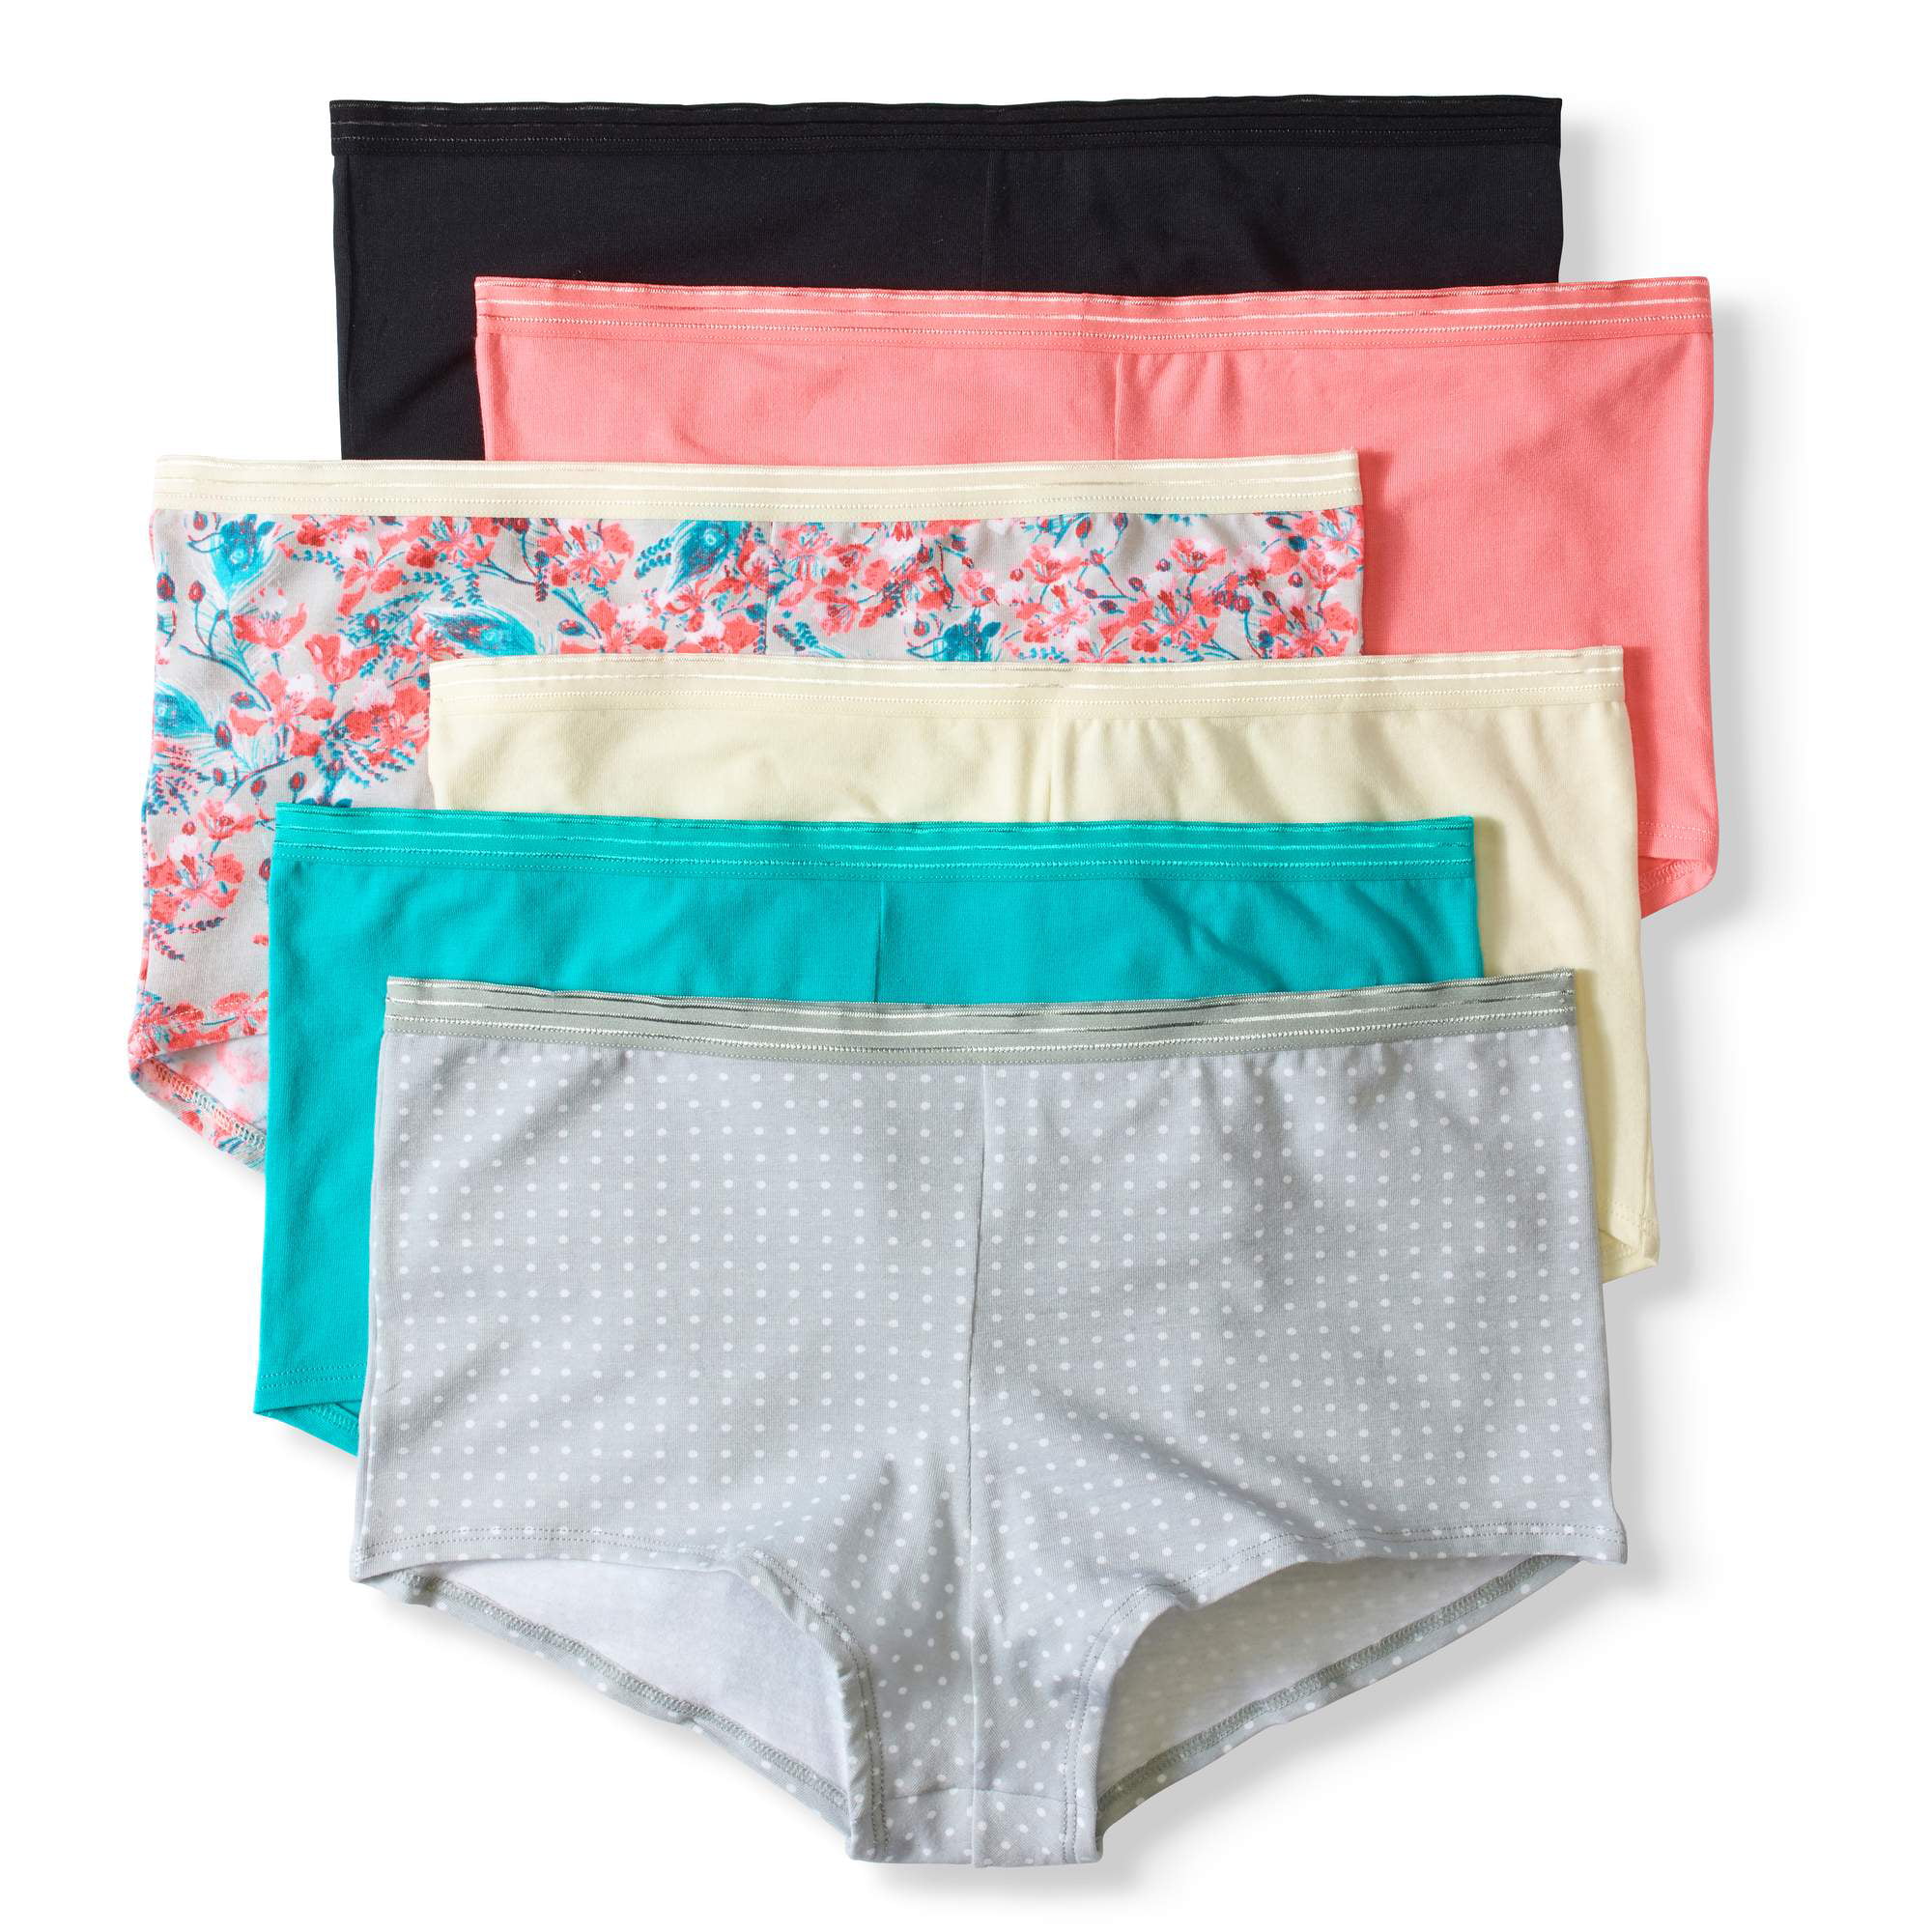 CHEROKEE Womens 6 Piece Ladies Cotton Stretch Brief Underwear Underwear